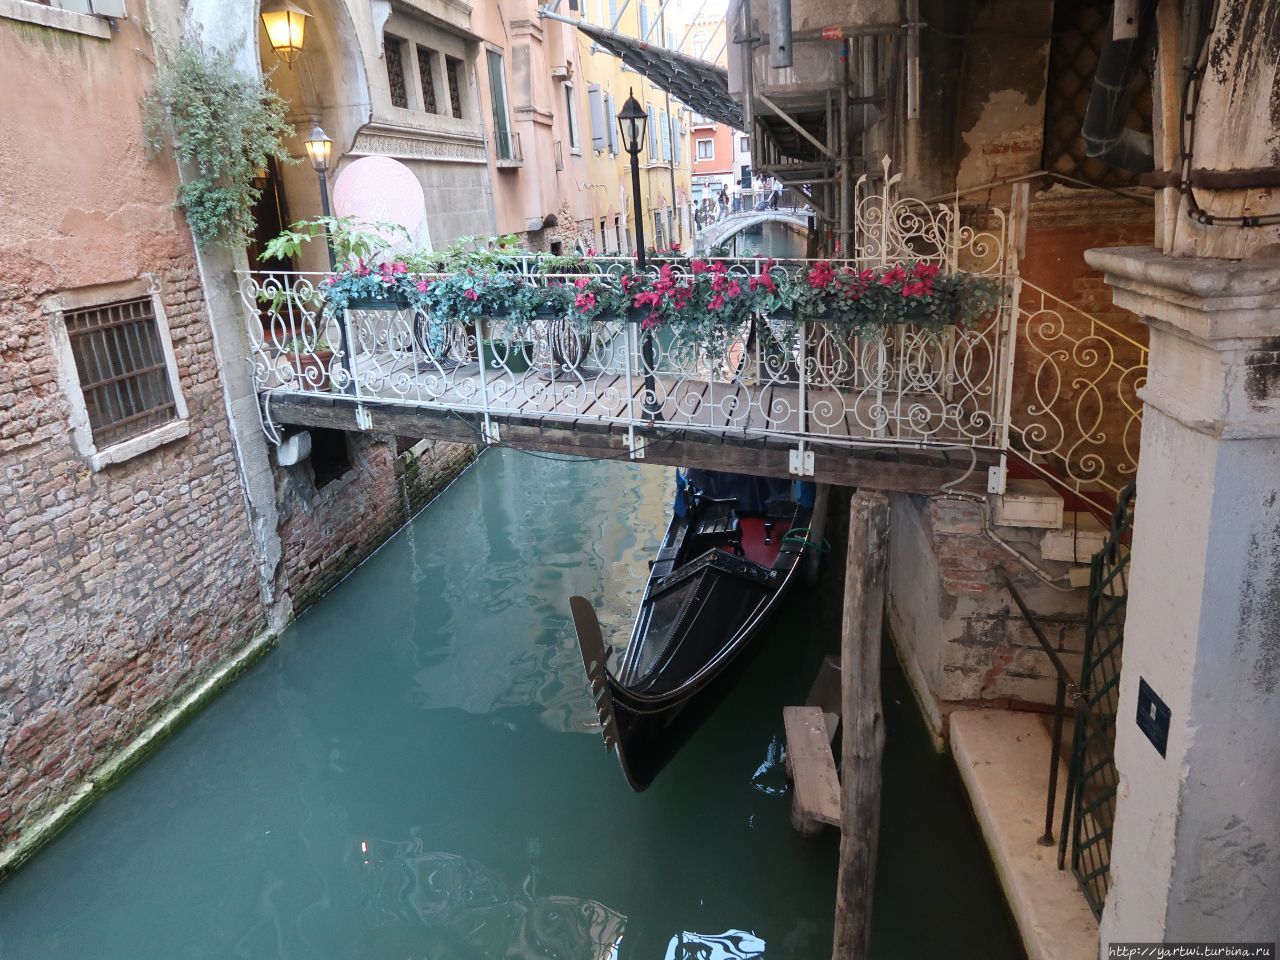 Живописные мостики через каналы района Сан-Марко Венеции. Вода чистая. Вы точно поинтересуетесь коммуникациями жизнеобеспечения в древнем городе. Венеция, Италия